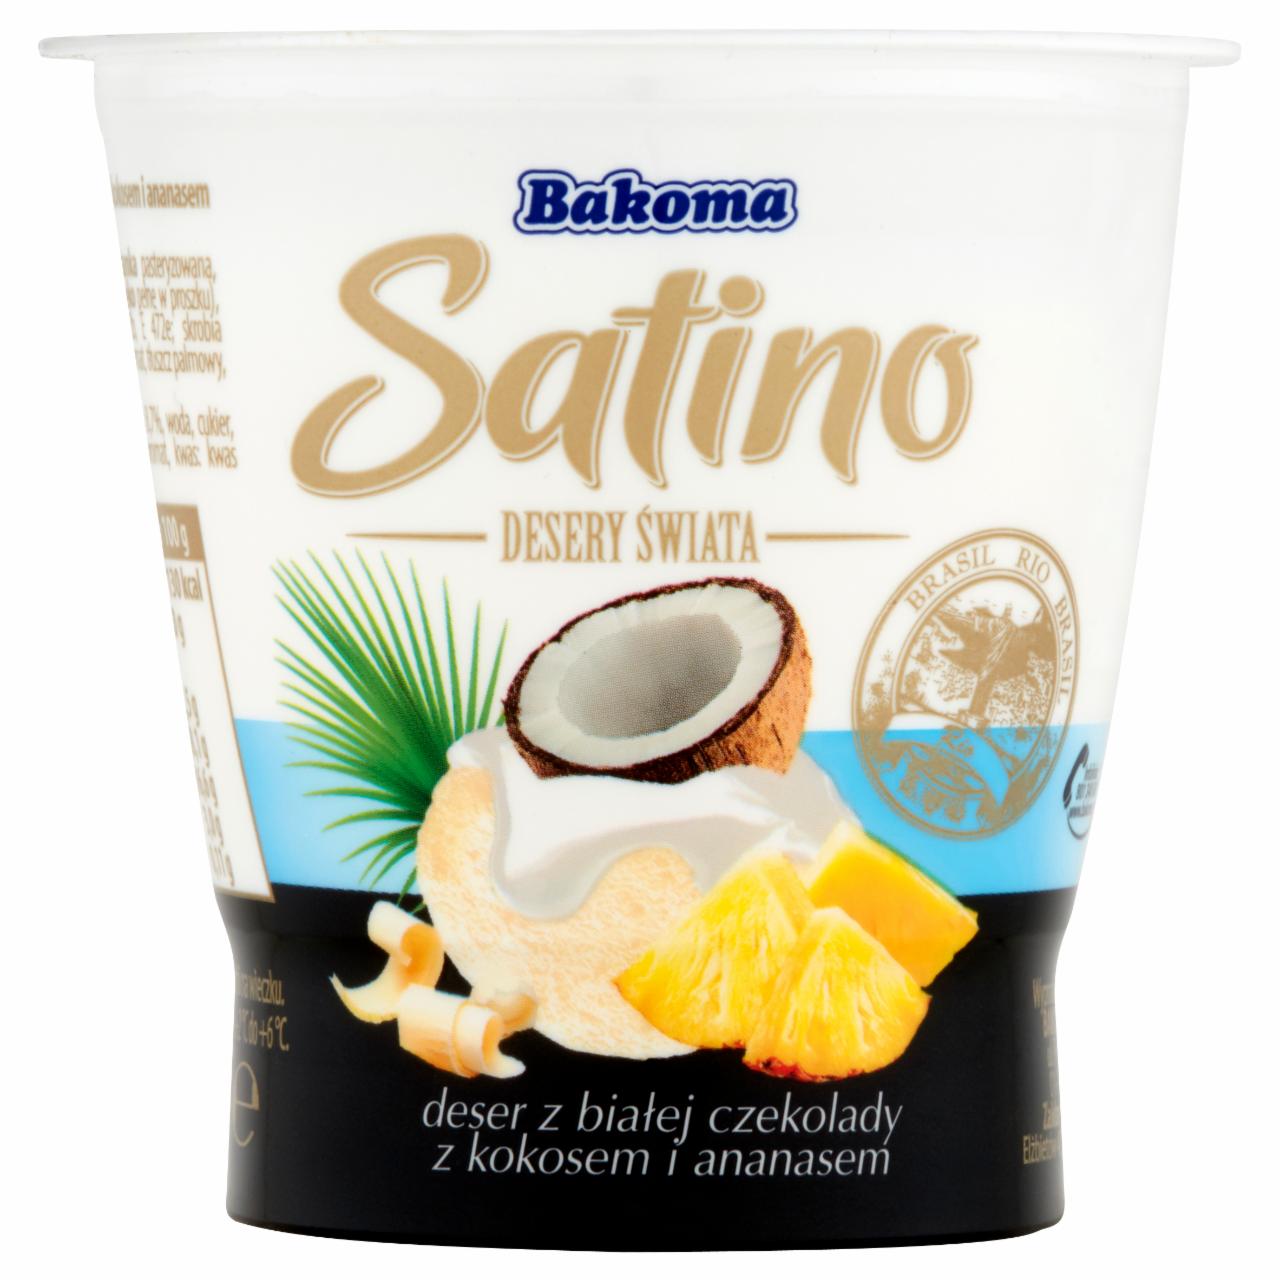 Zdjęcia - Bakoma Satino Desery Świata Rio Deser z białej czekolady z kokosem i ananasem 80 g